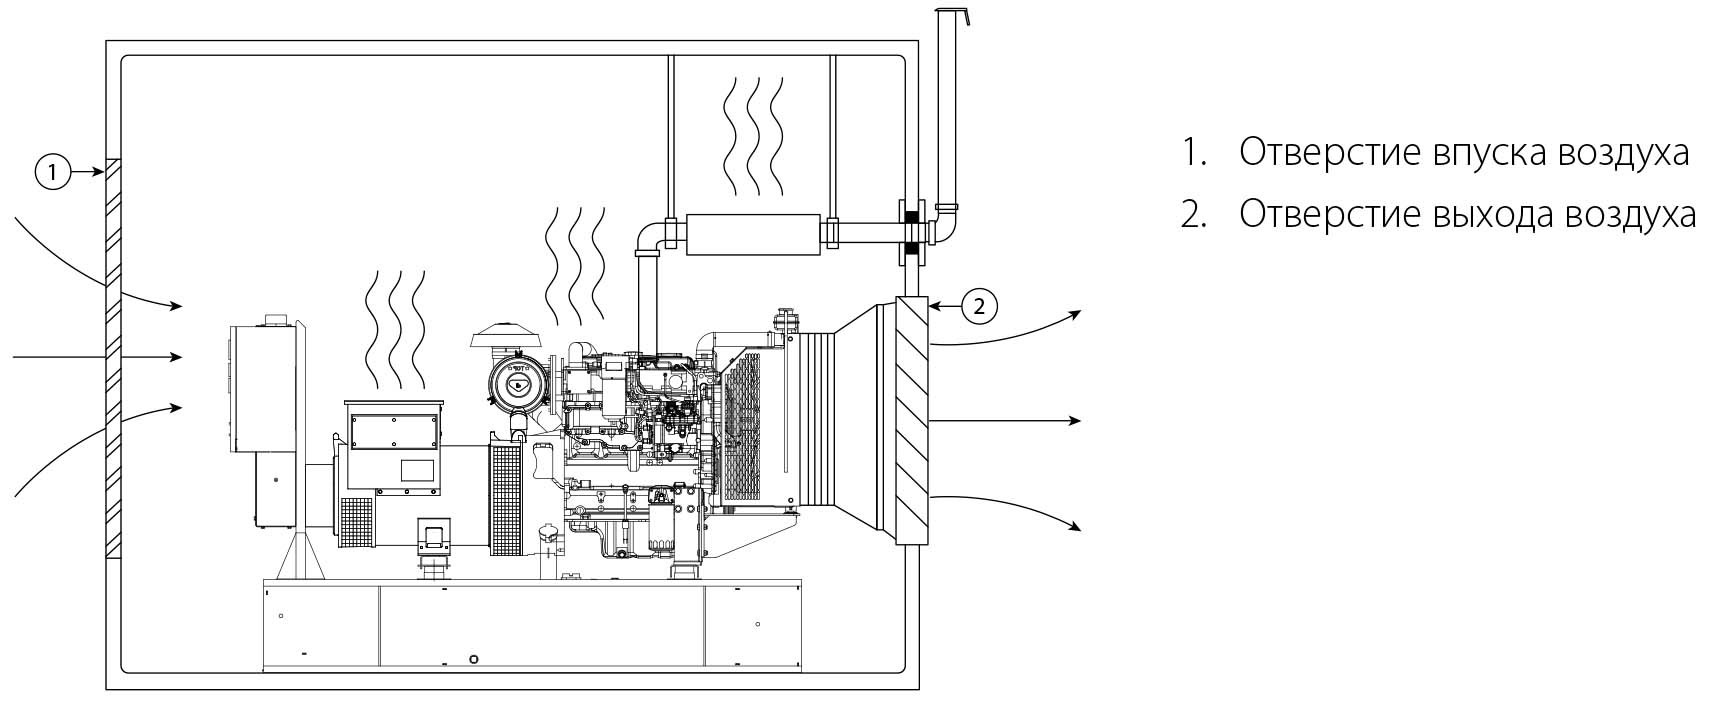 Дизель генератор – пример установки в помещении